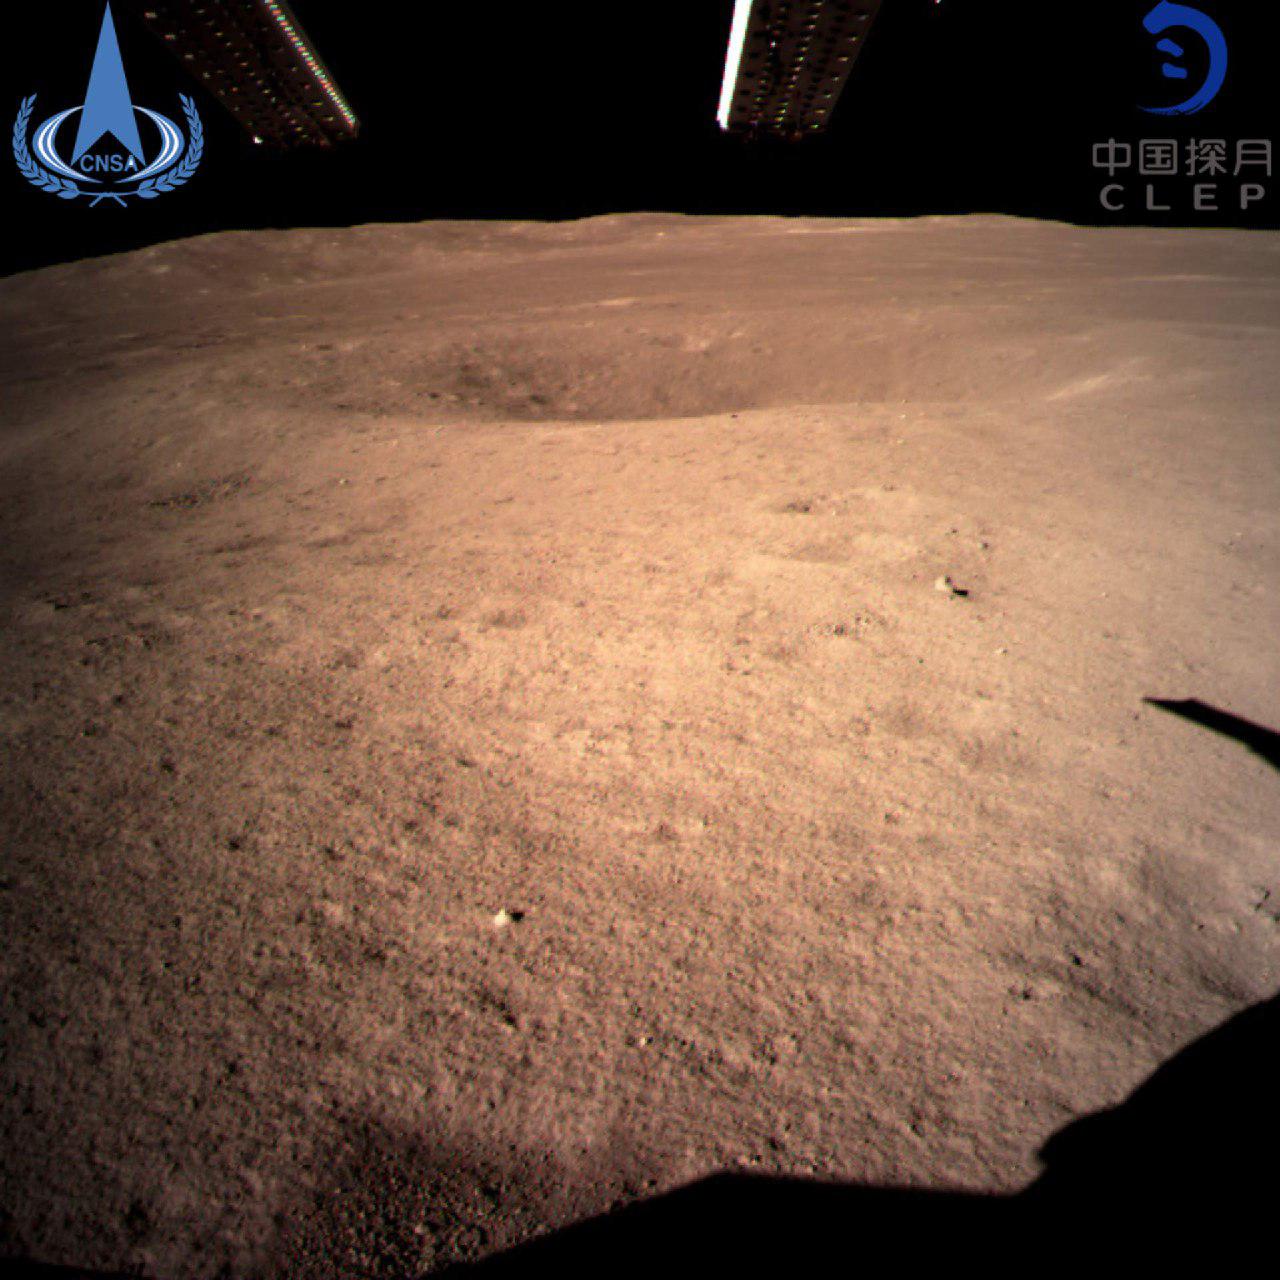 کاوشگر چین در نیمه پنهان ماه+تصویر نجومی روز 1